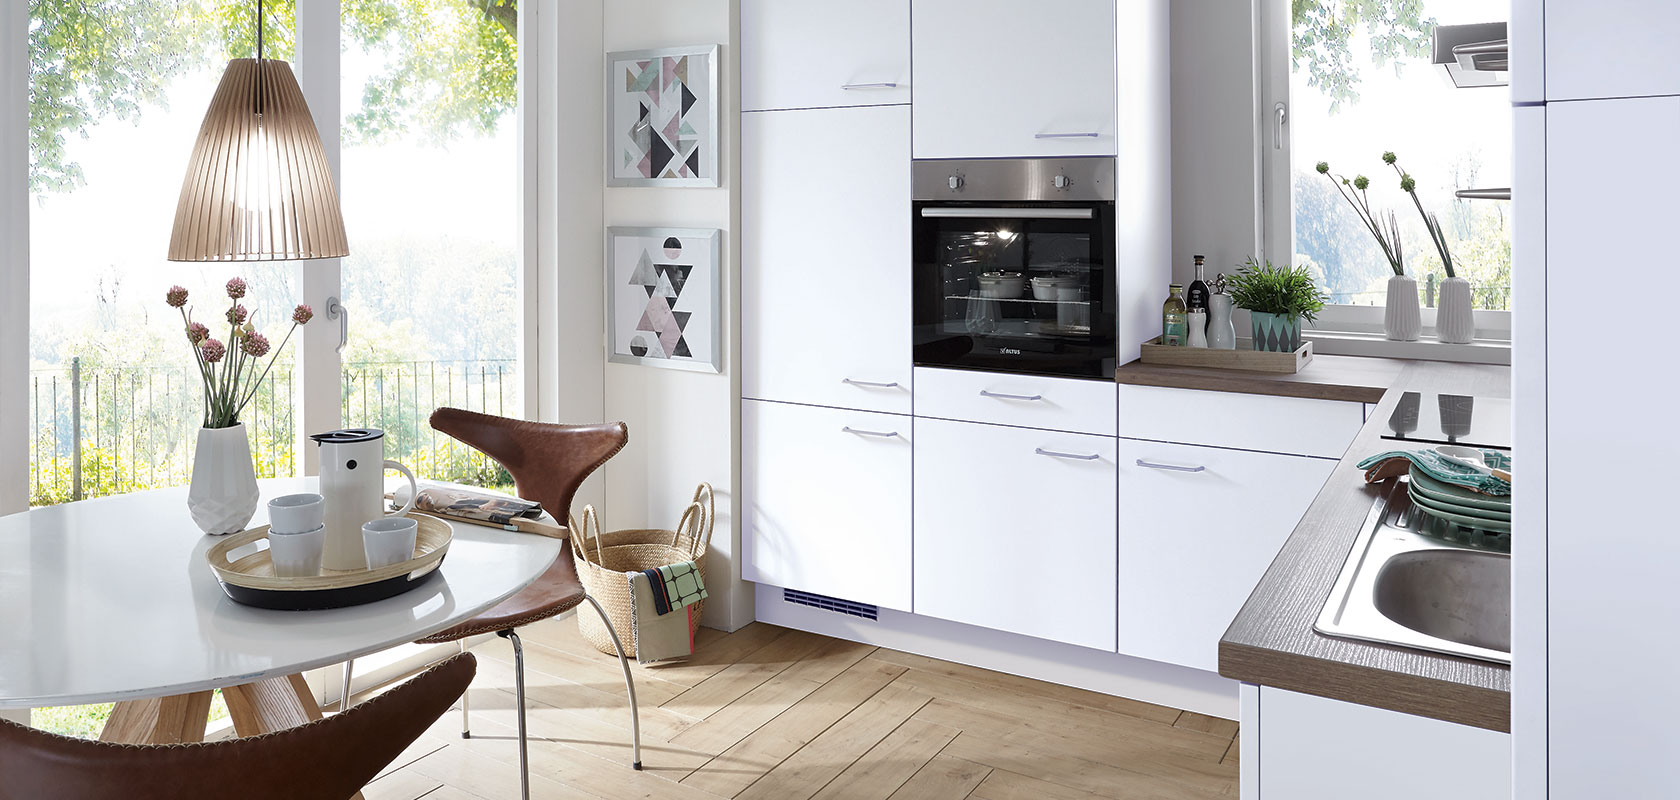 Luminoso y moderno interior de cocina con gabinetes blancos limpios, electrodomésticos integrados y un acogedor comedor con una mesa redonda con vistas a un soleado jardín.